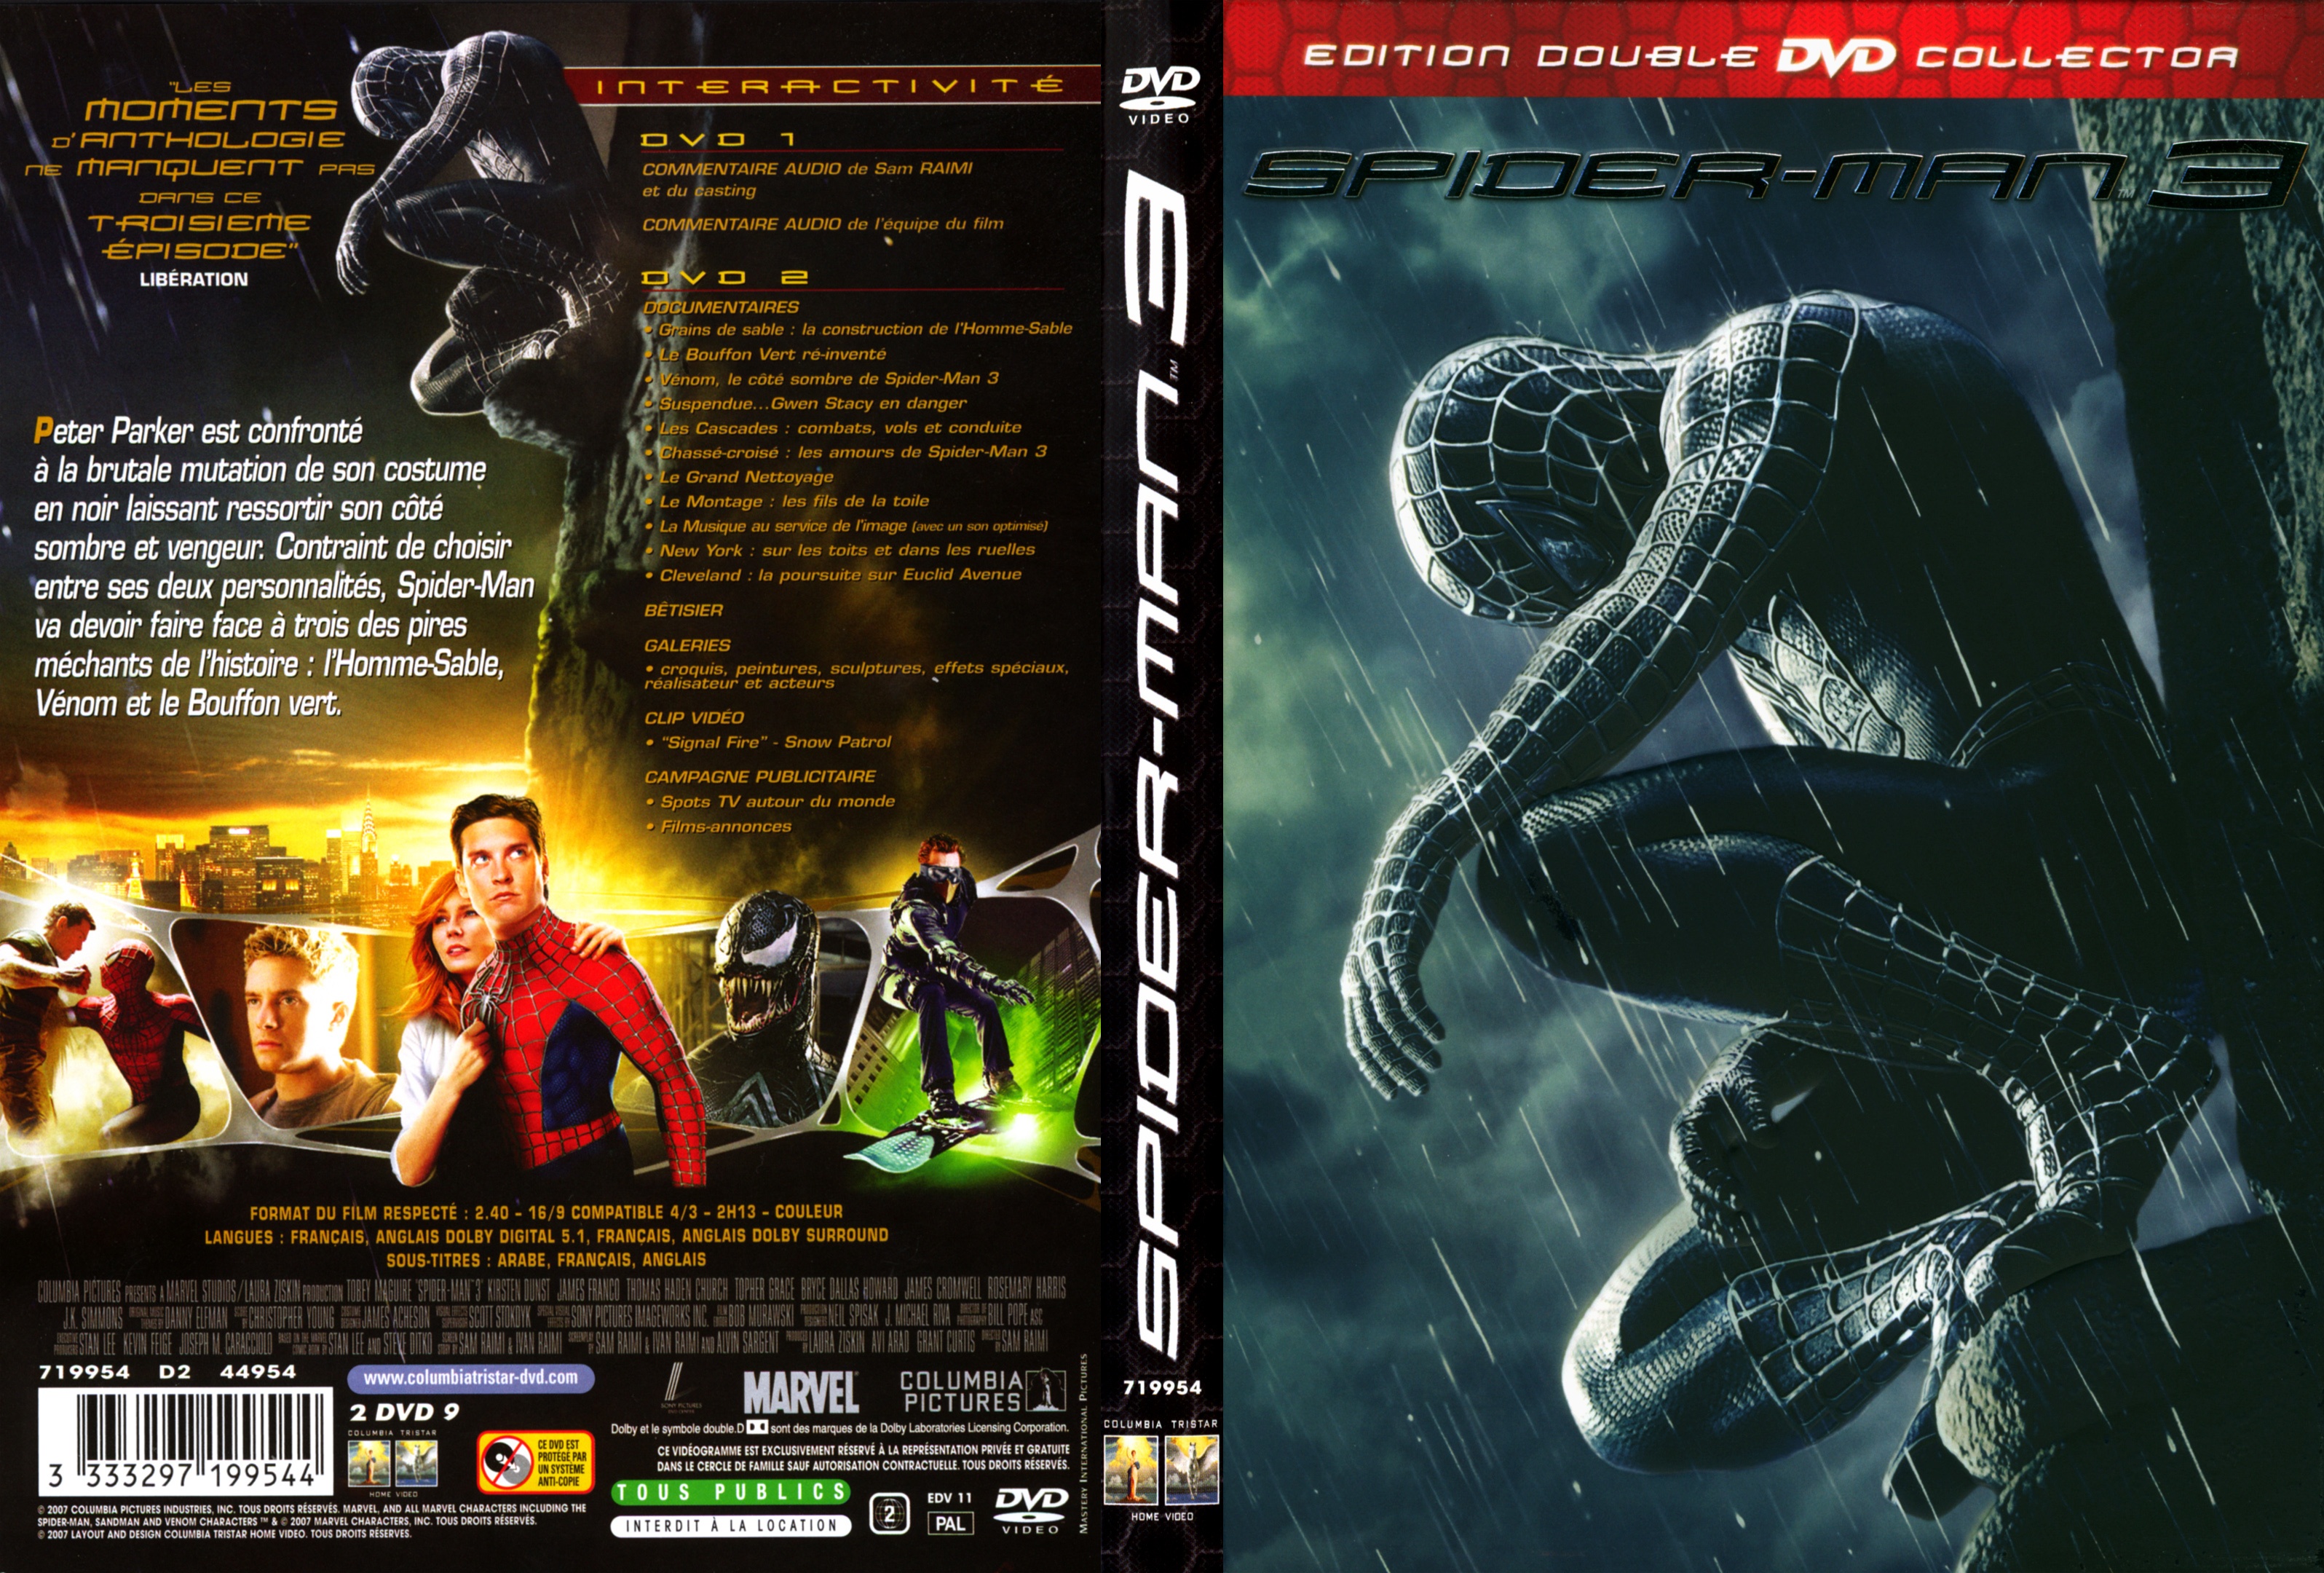 Jaquette DVD Spiderman 3 v2